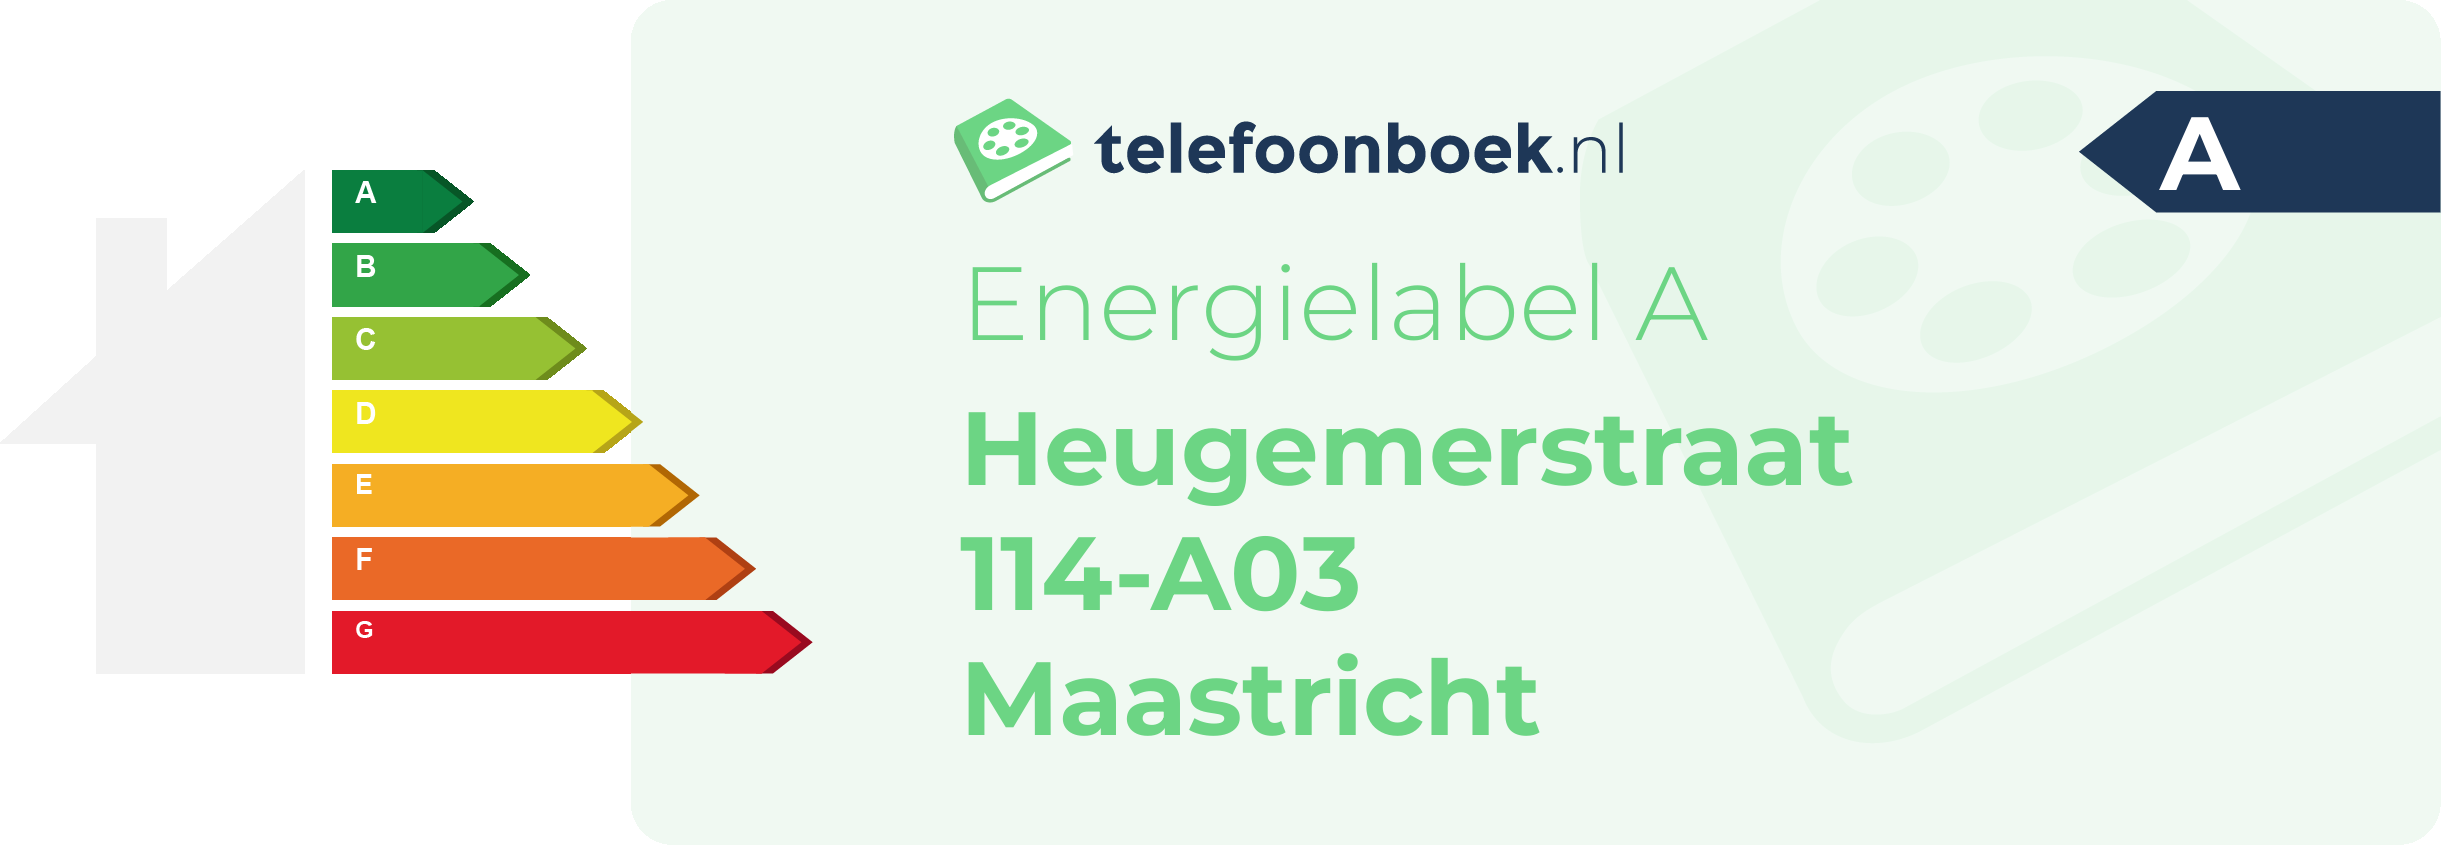 Energielabel Heugemerstraat 114-A03 Maastricht